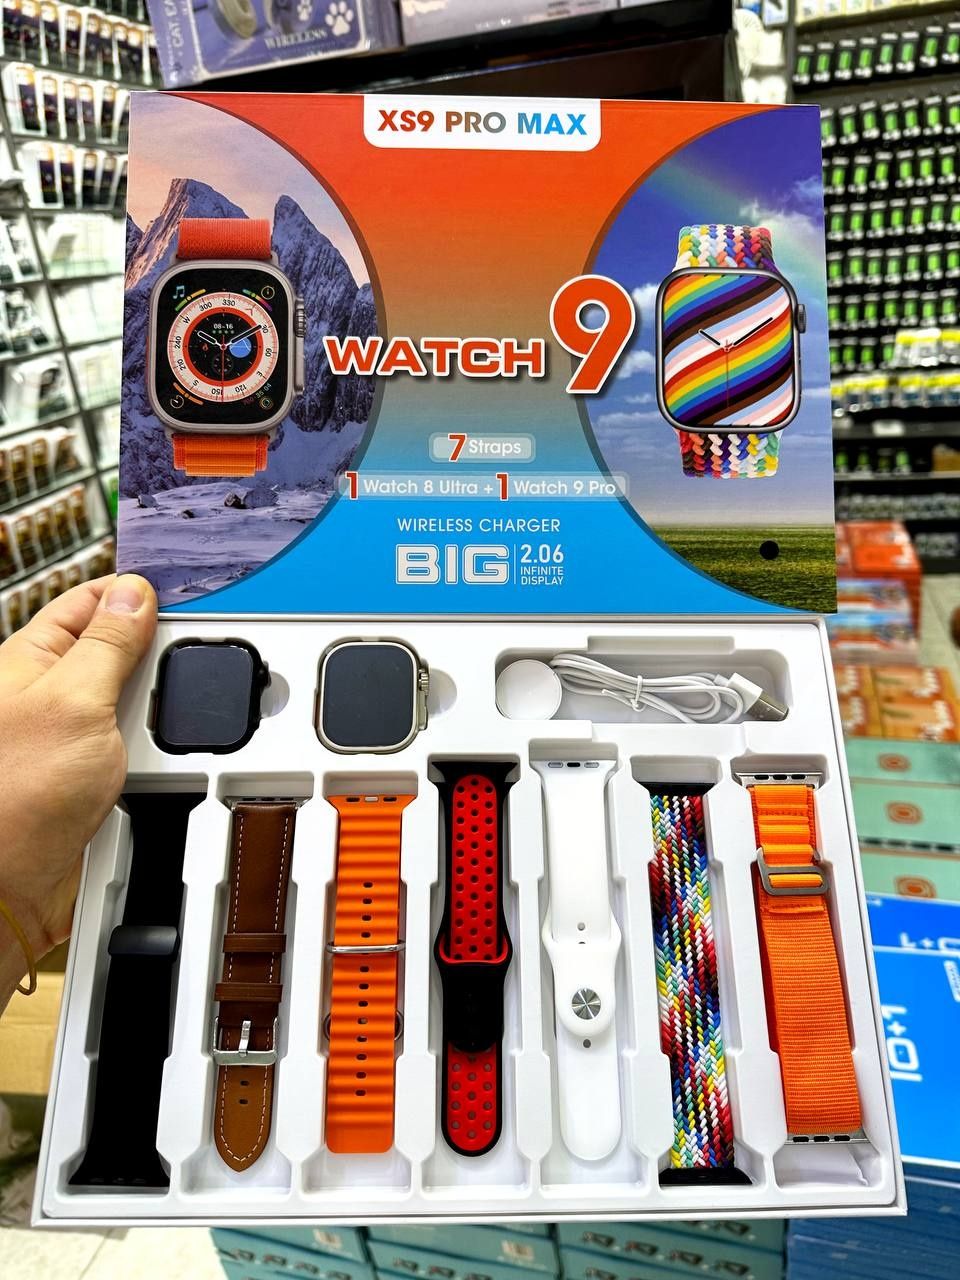 Smart Watch Xs9 Pro Max